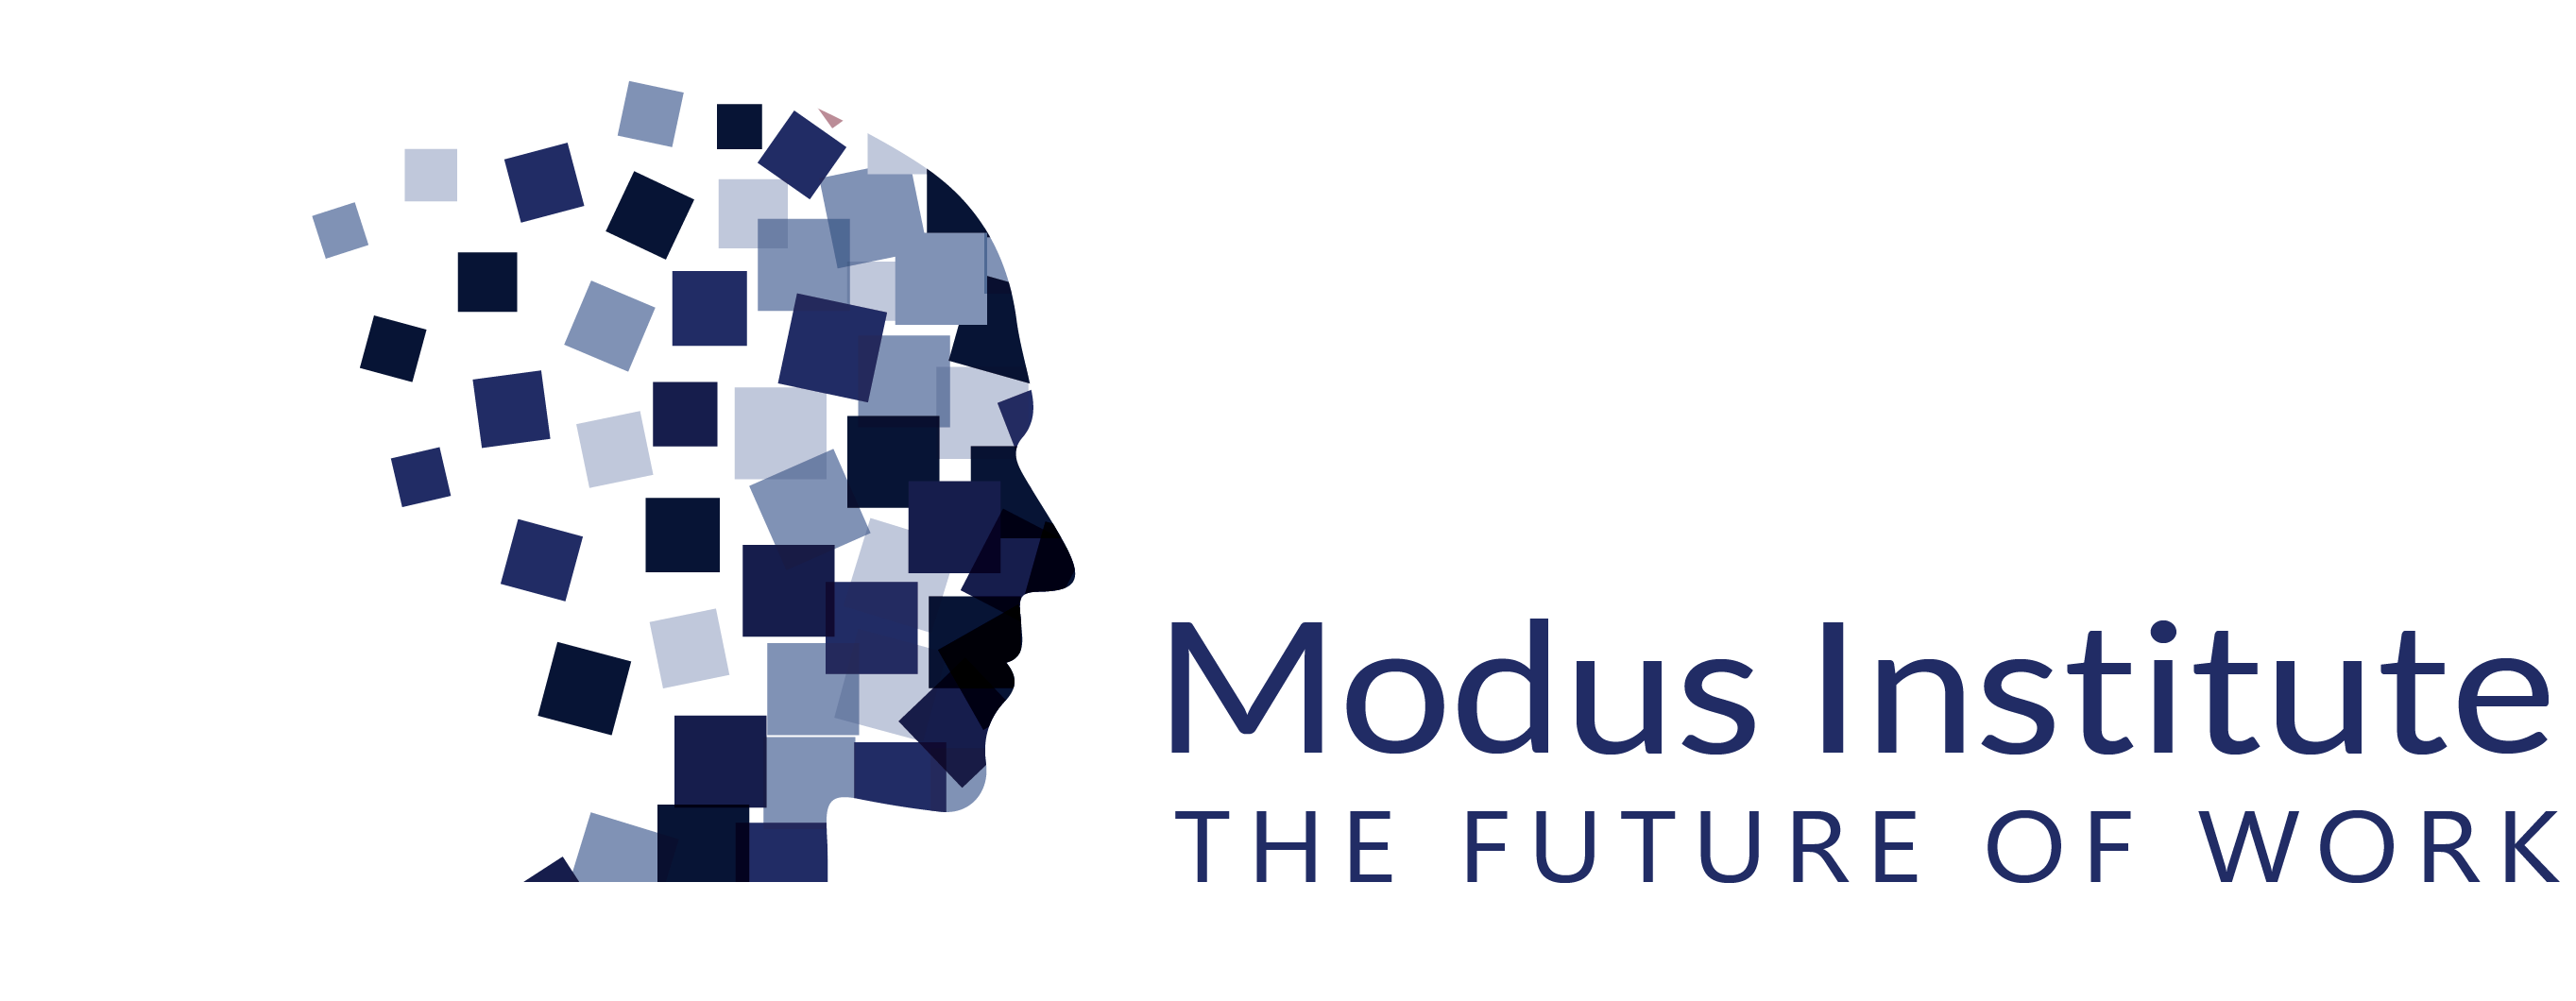 Modus Institute - The Future of Work Logo